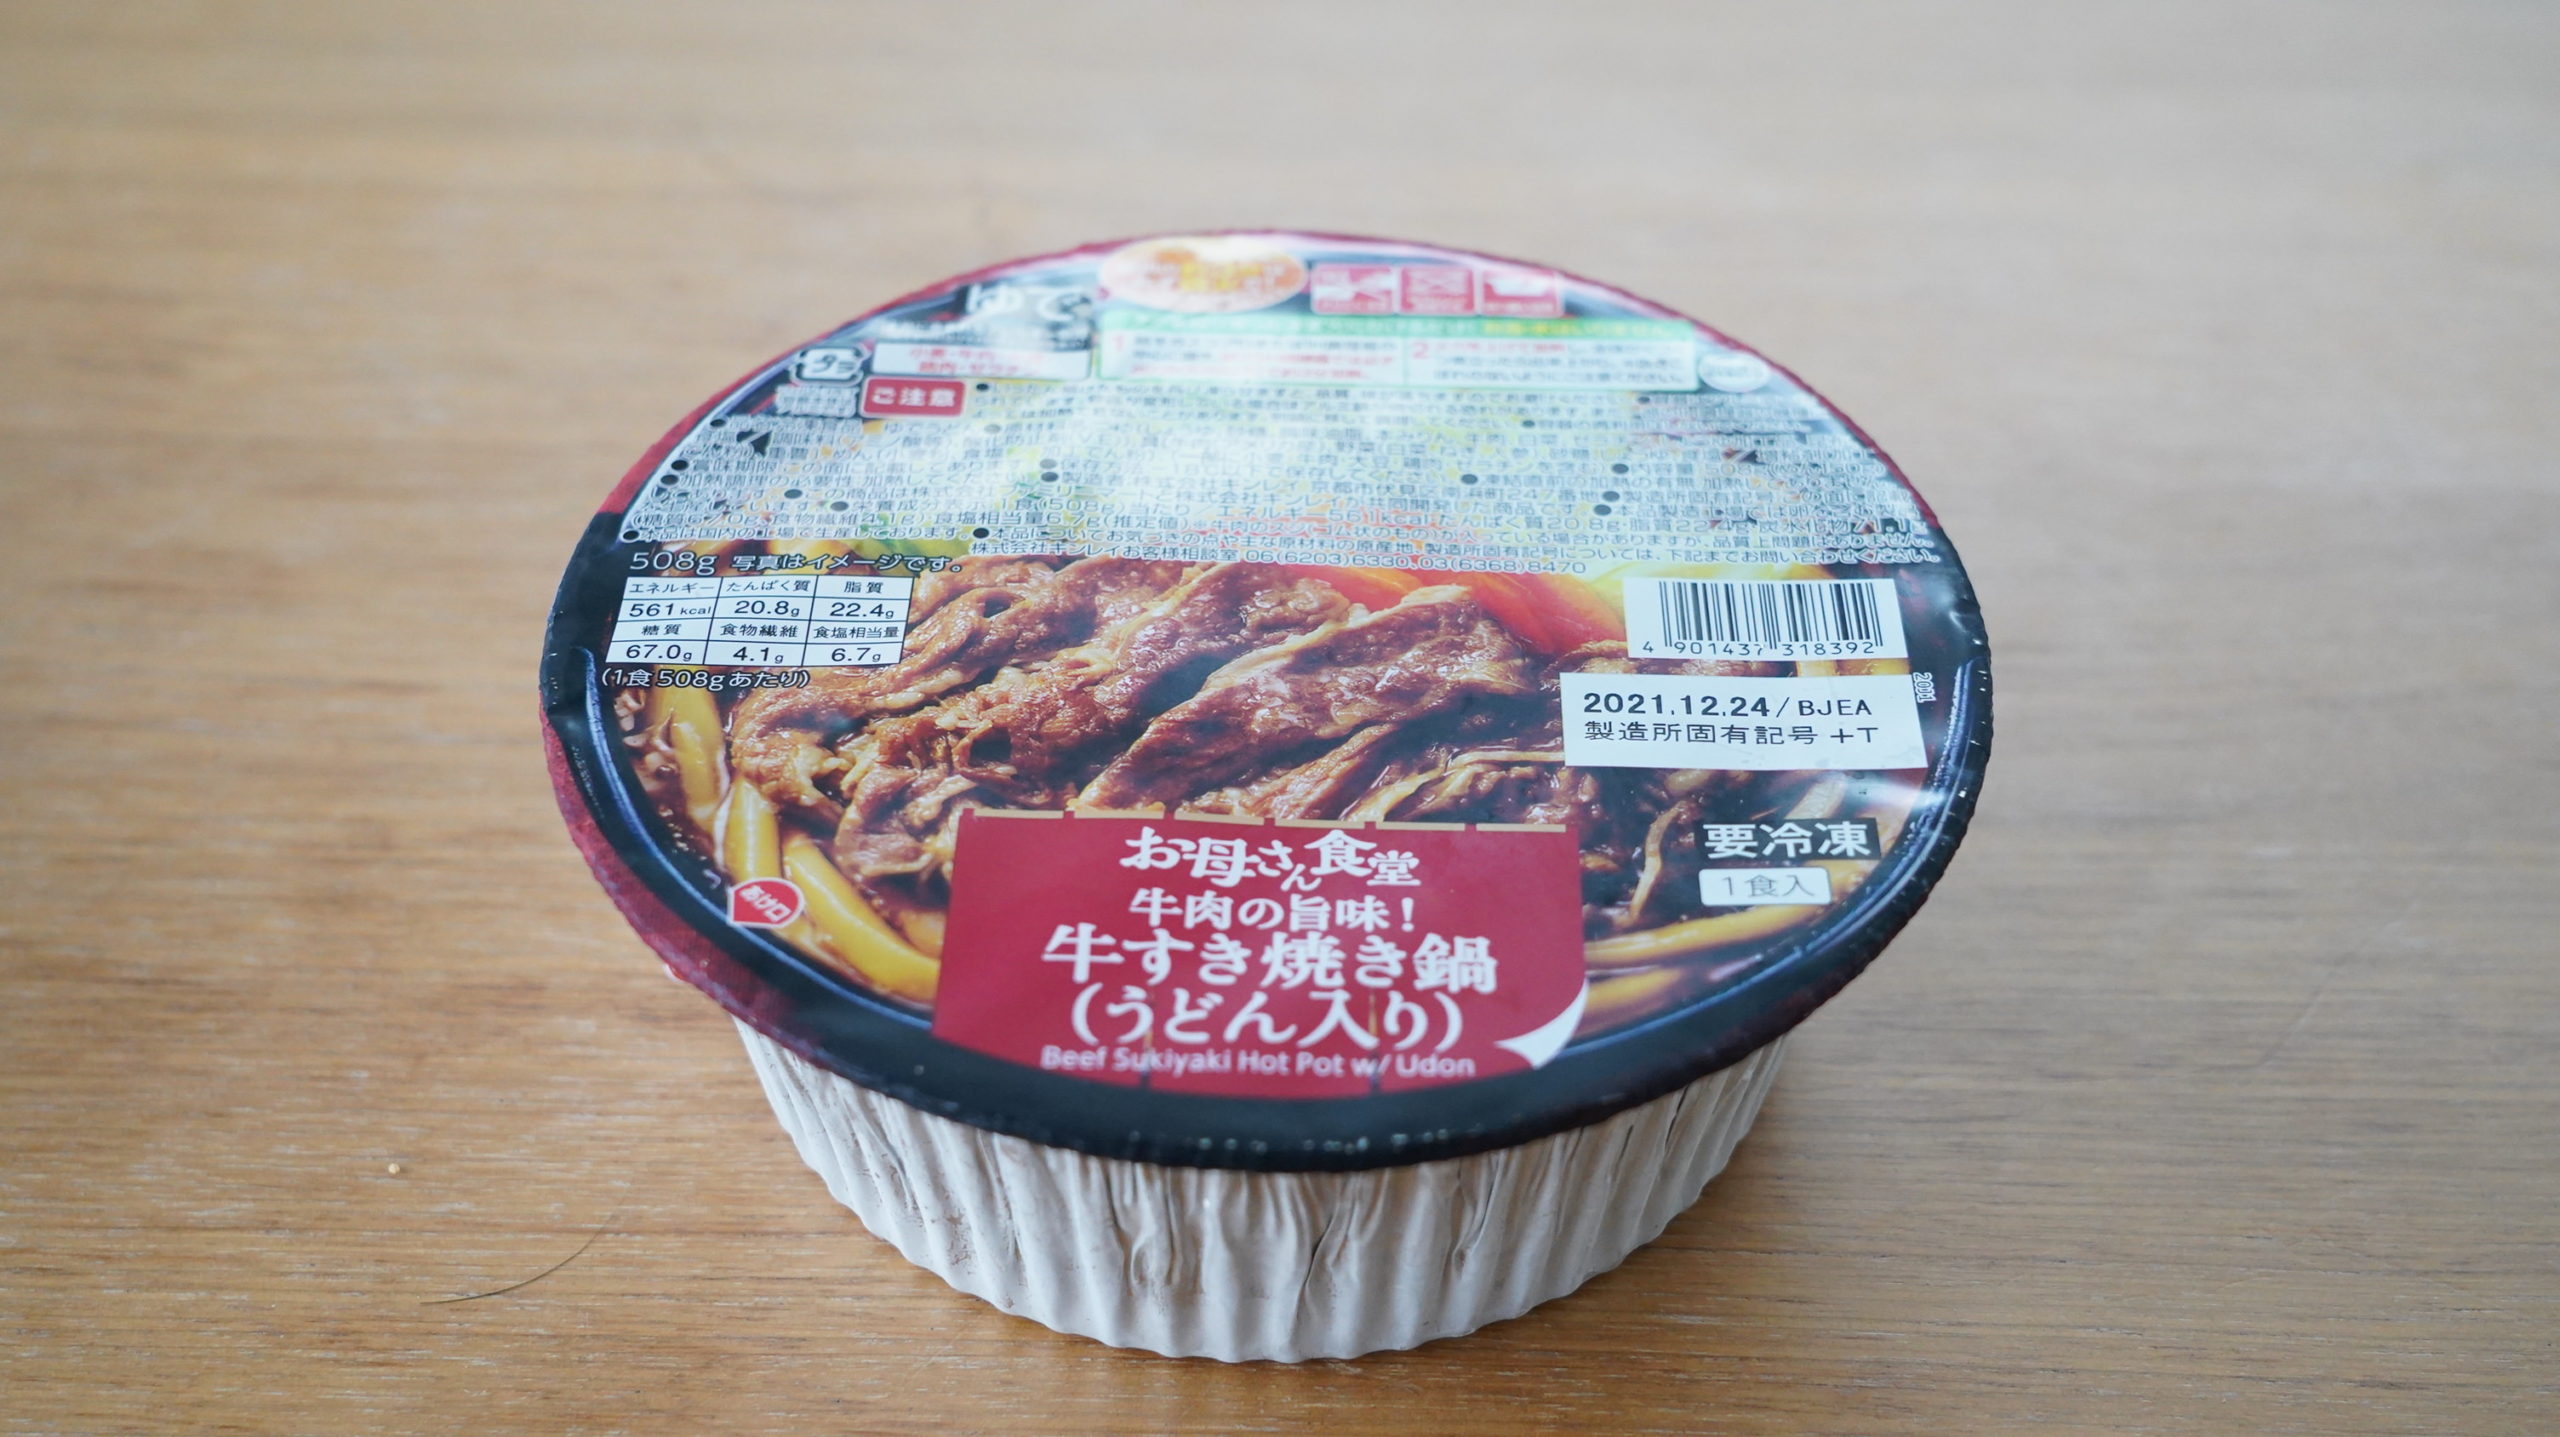 ファミリーマートの冷凍食品「牛肉の旨味！牛すき焼き鍋（うどん入り）」の全体写真